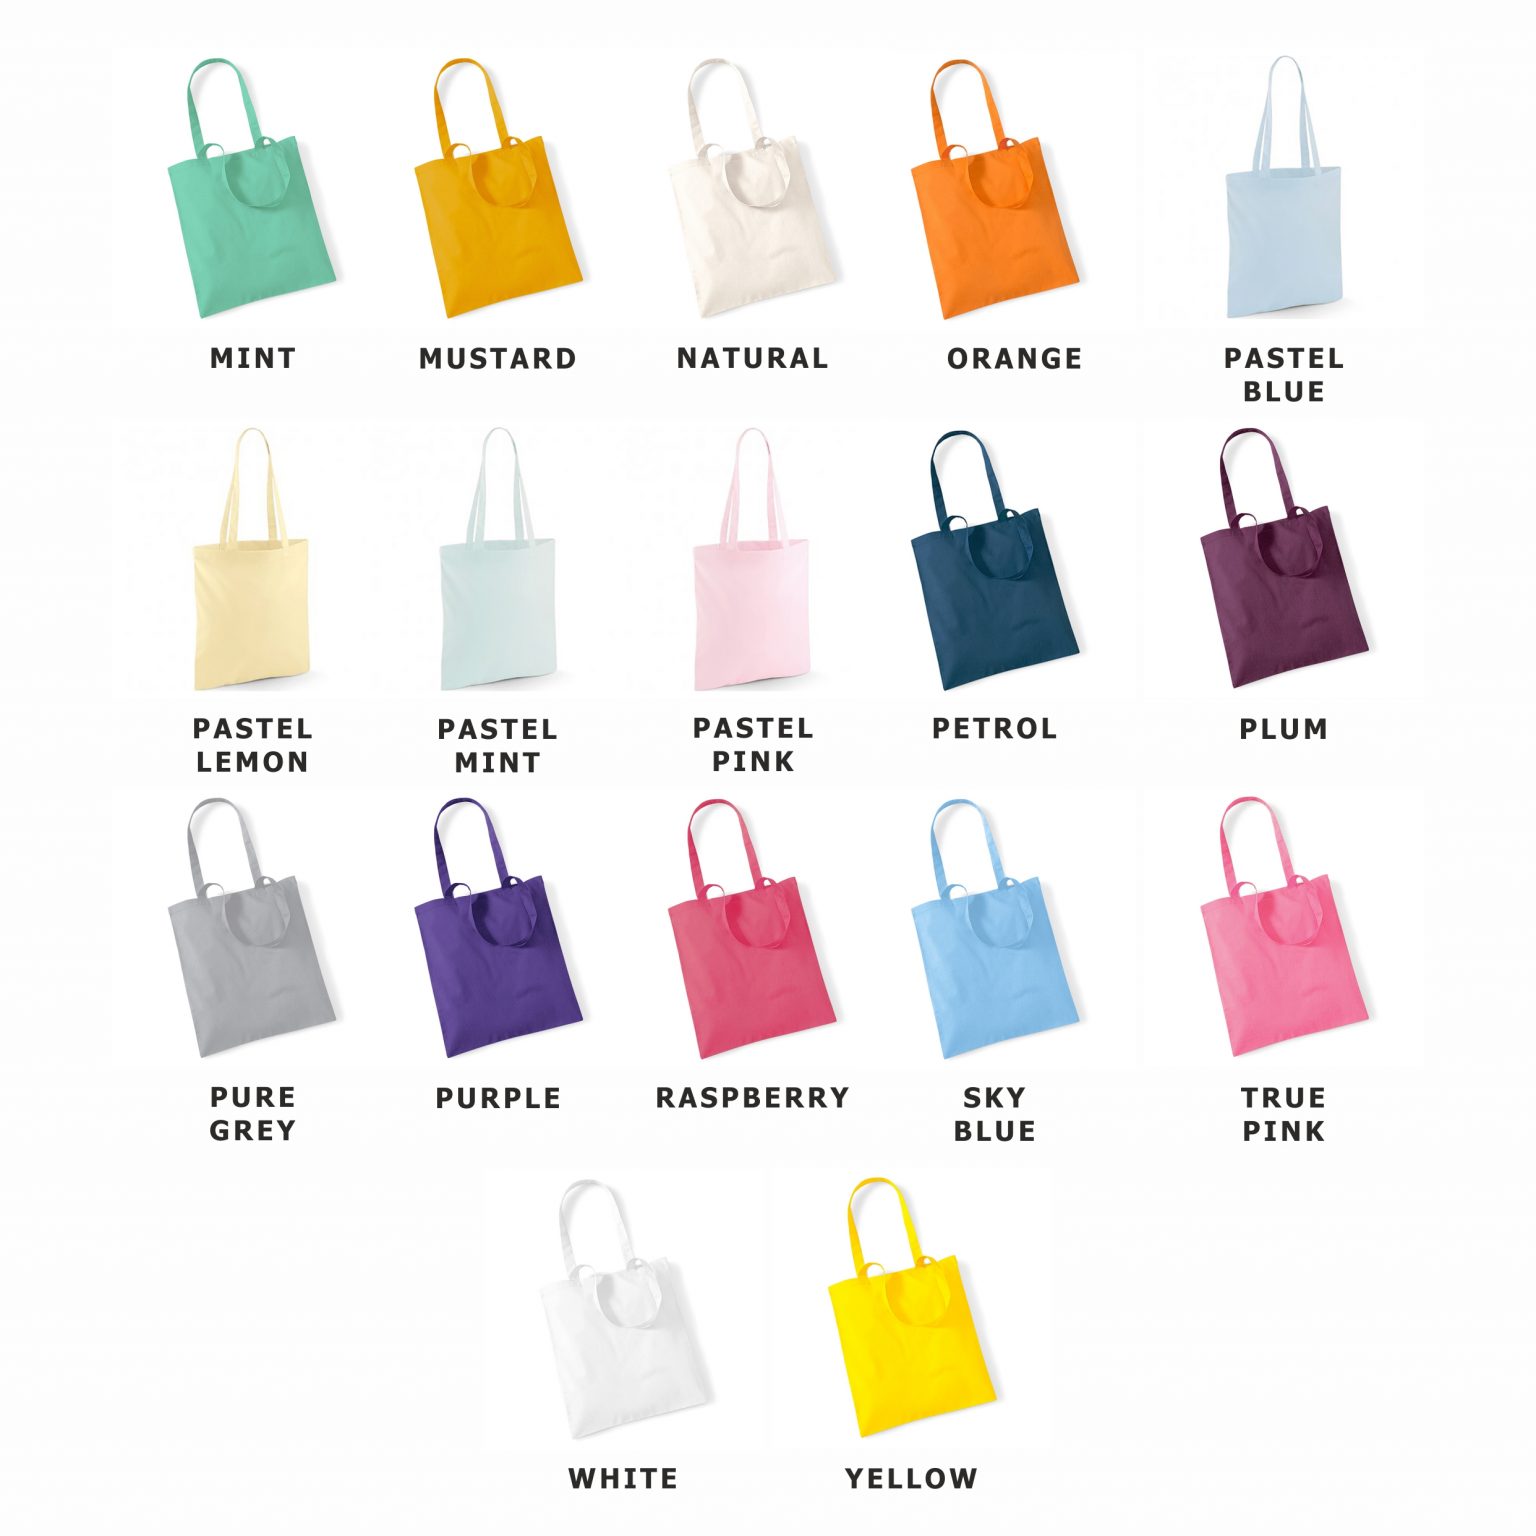 Tote Bag Colour Choices